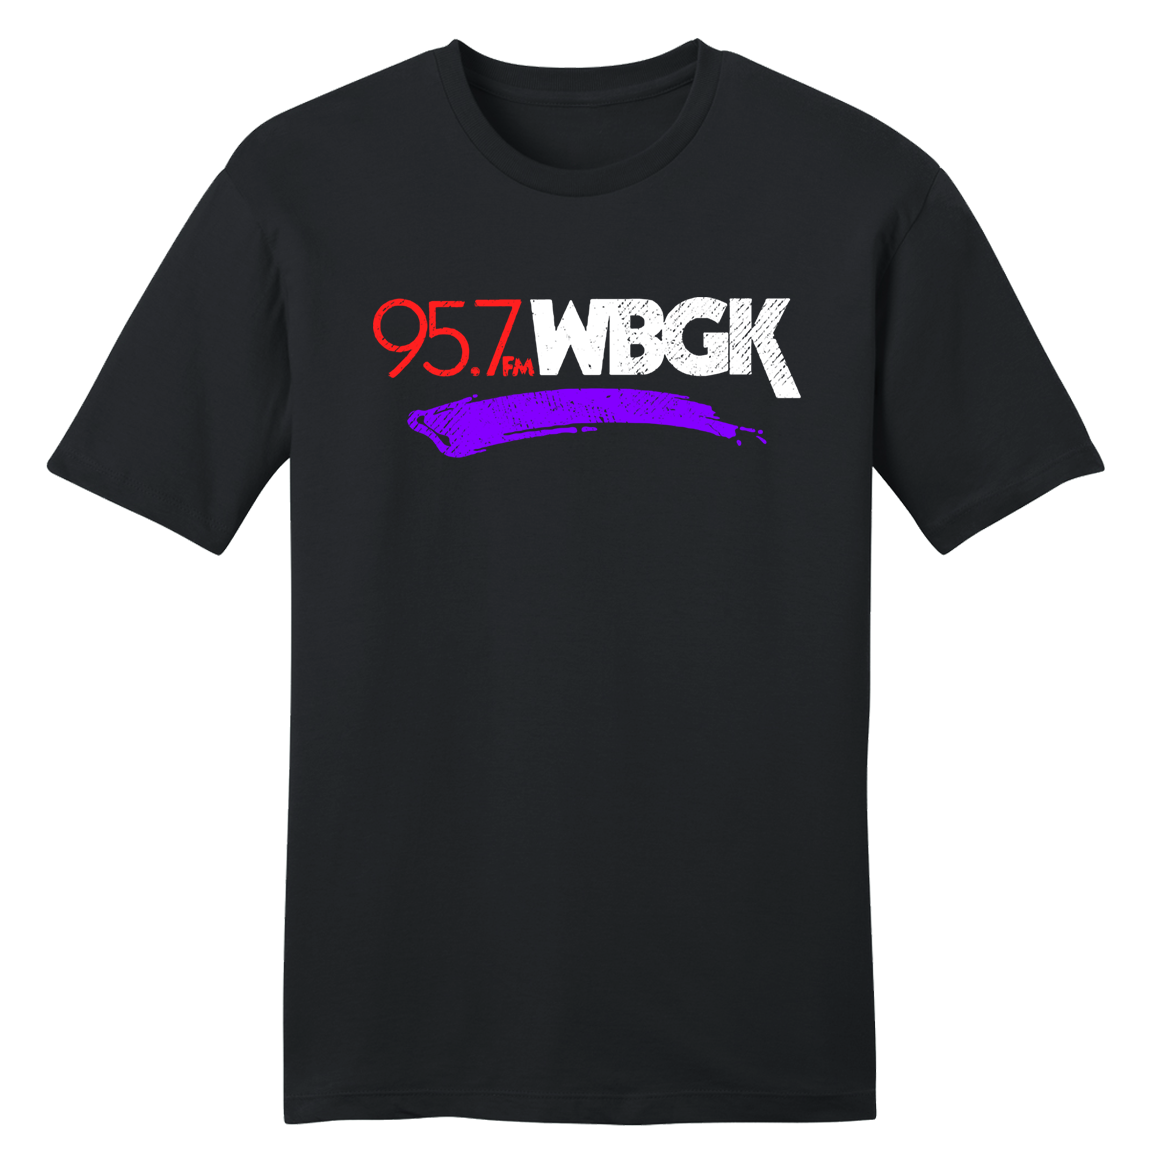 95.7 WBGK Radio